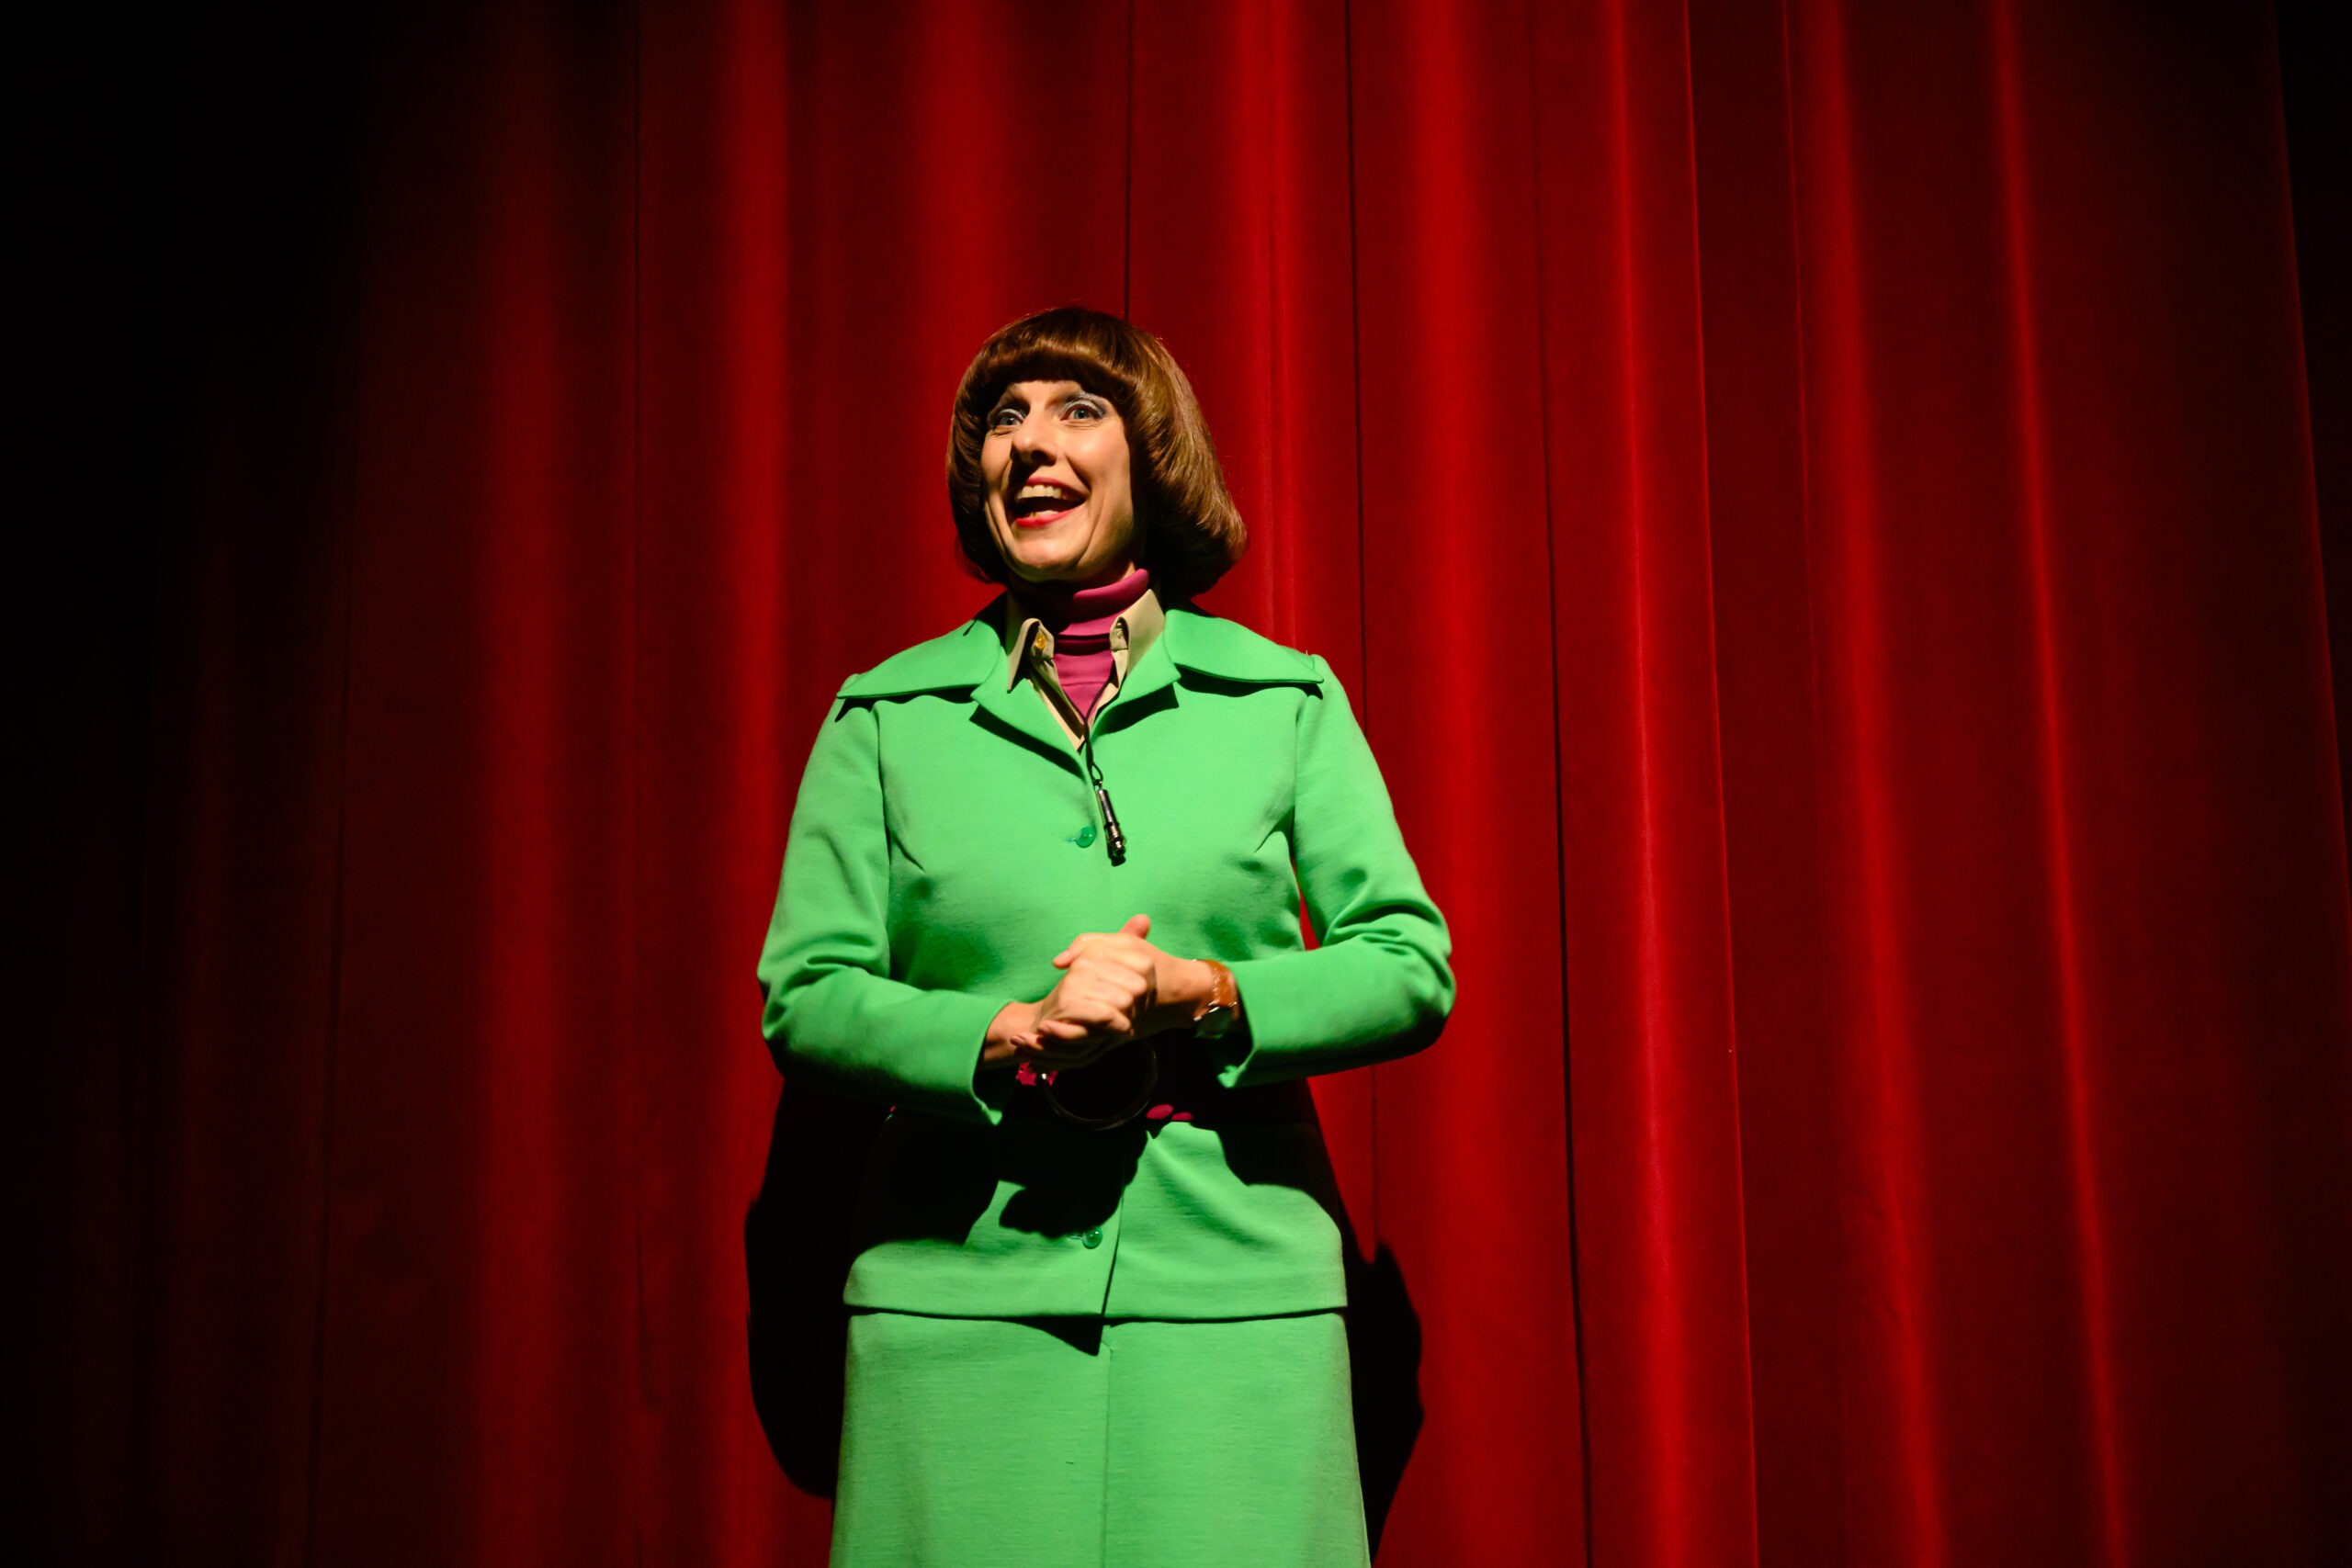 Vrouw met groen mantelpakje staat voor een rood theatergordijn